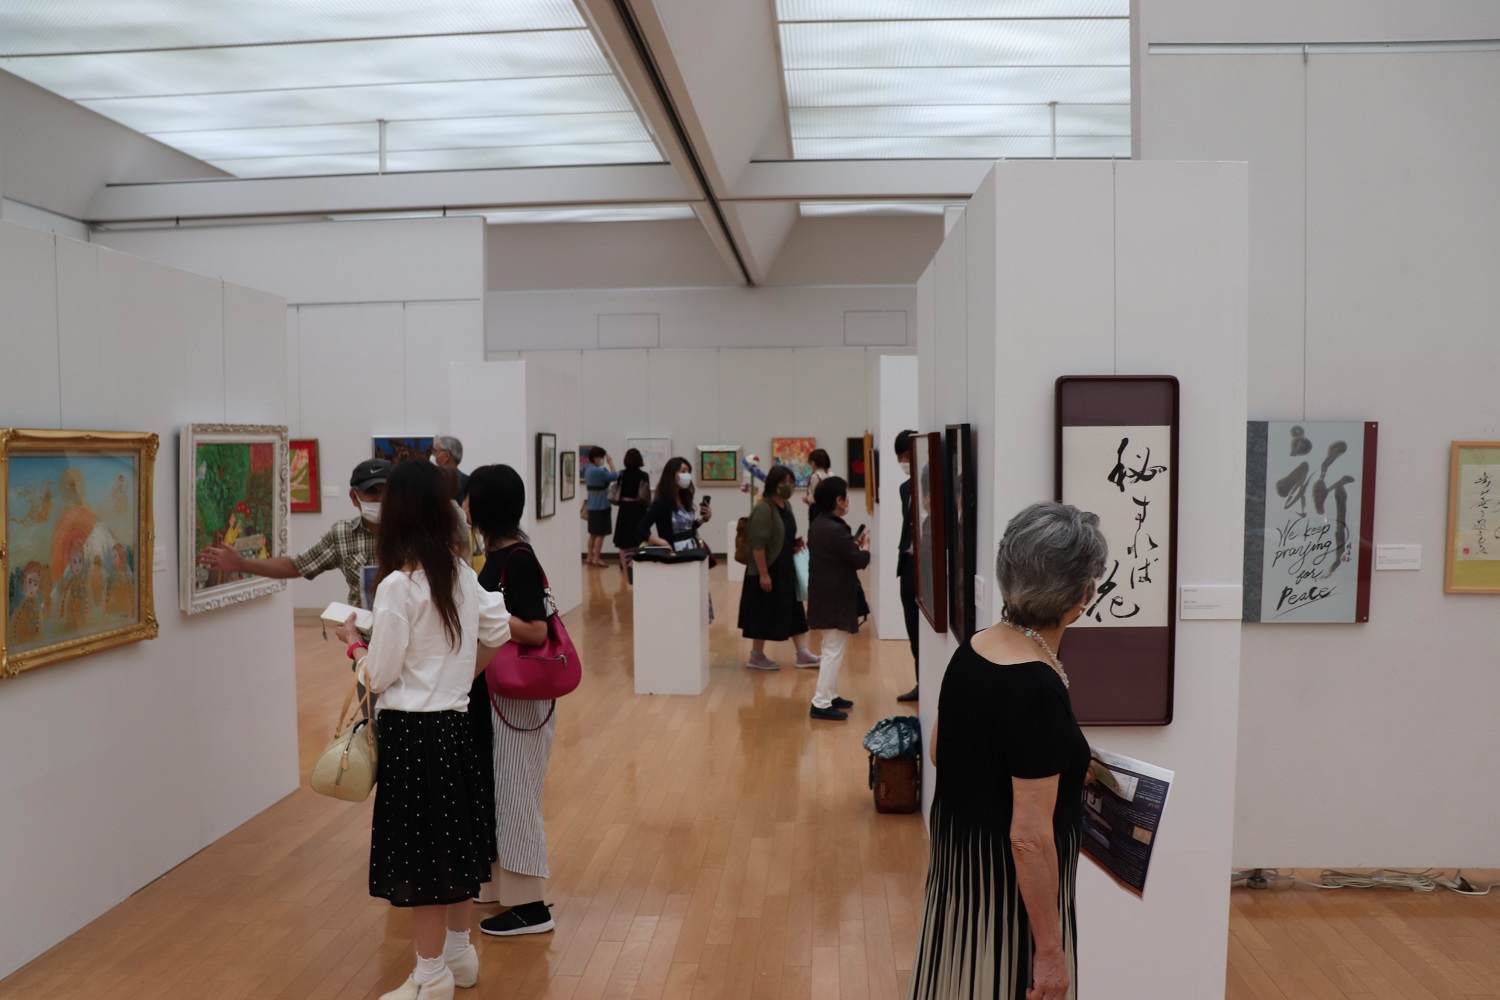 Pasaulio taikai skirtoje parodoje – Japonijos ir Lietuvos menininkų darbai